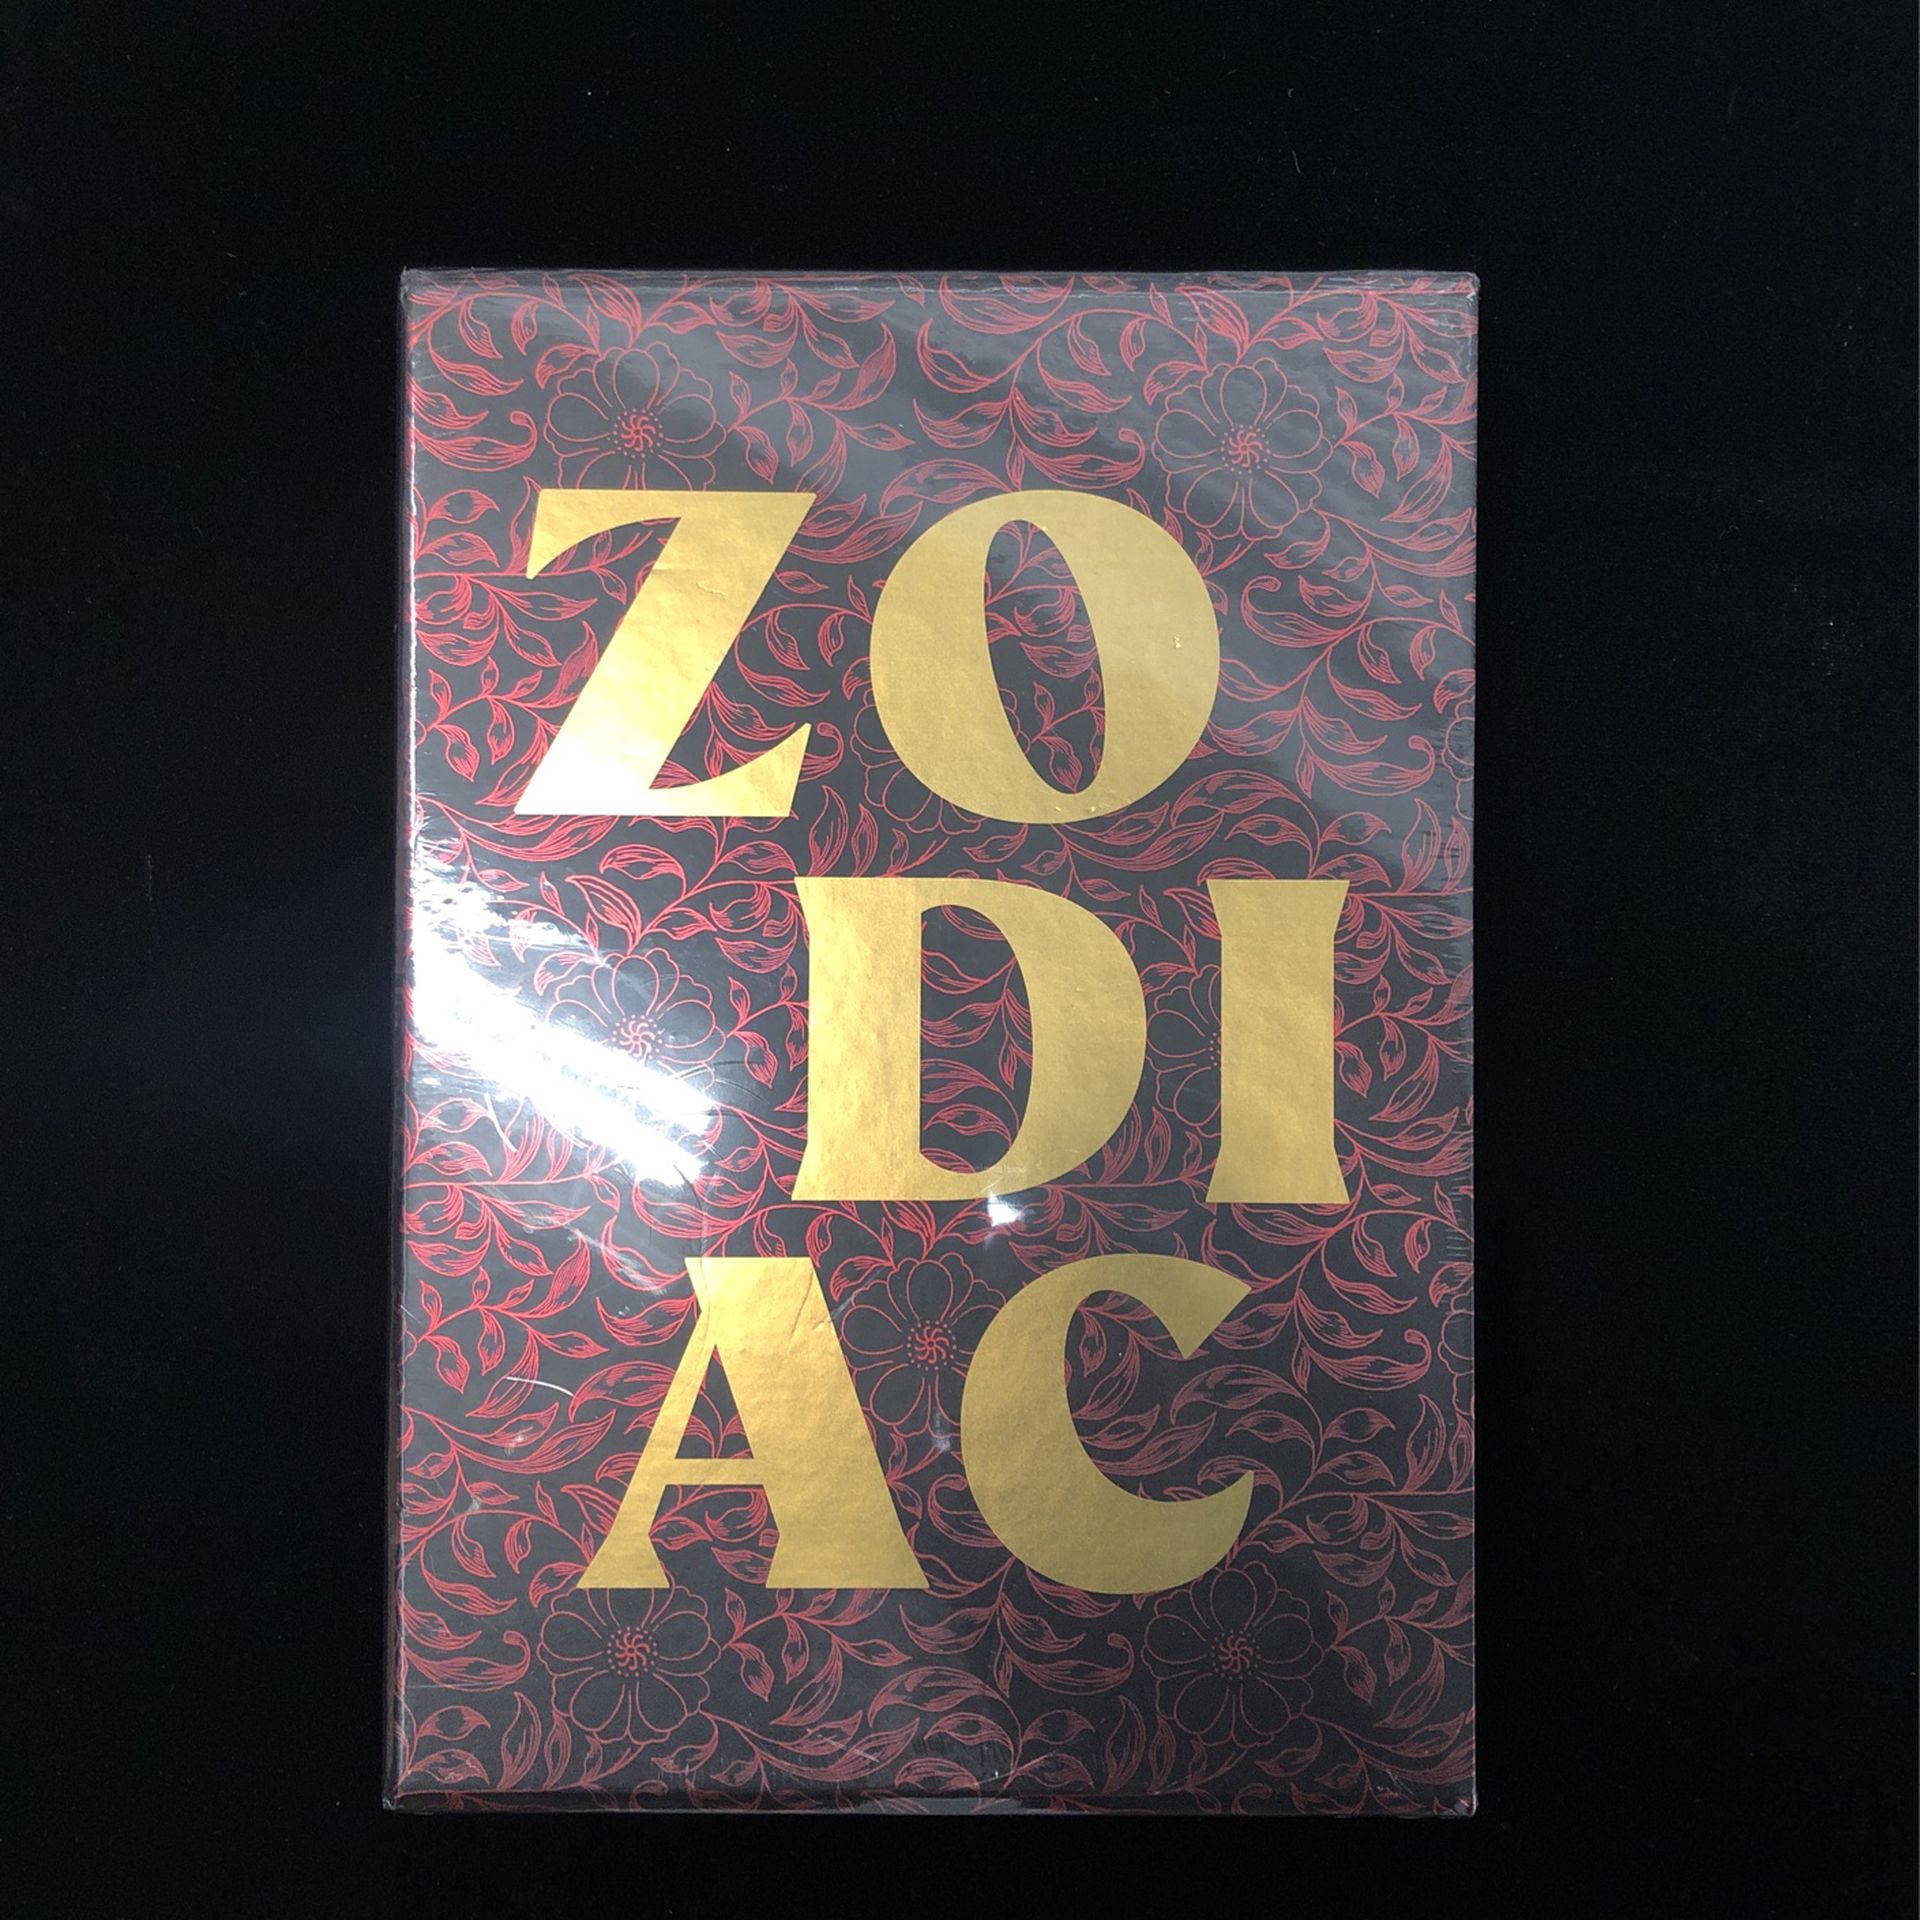 Ai Wei Wei Zodiac Book Beautiful 